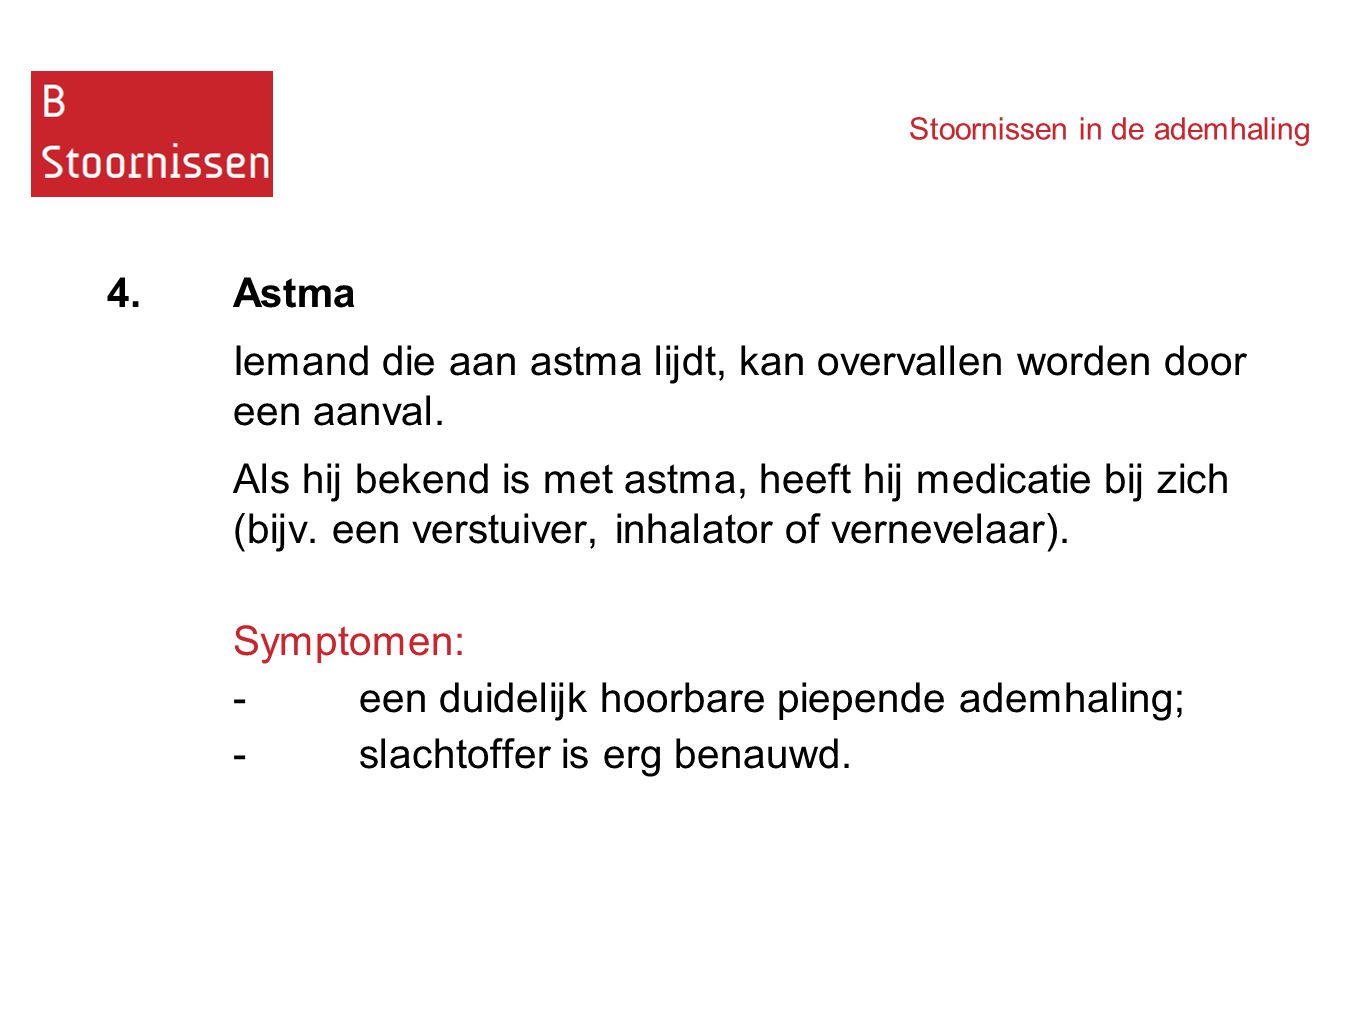 Iemand die aan astma lijdt, kan overvallen worden door een aanval.